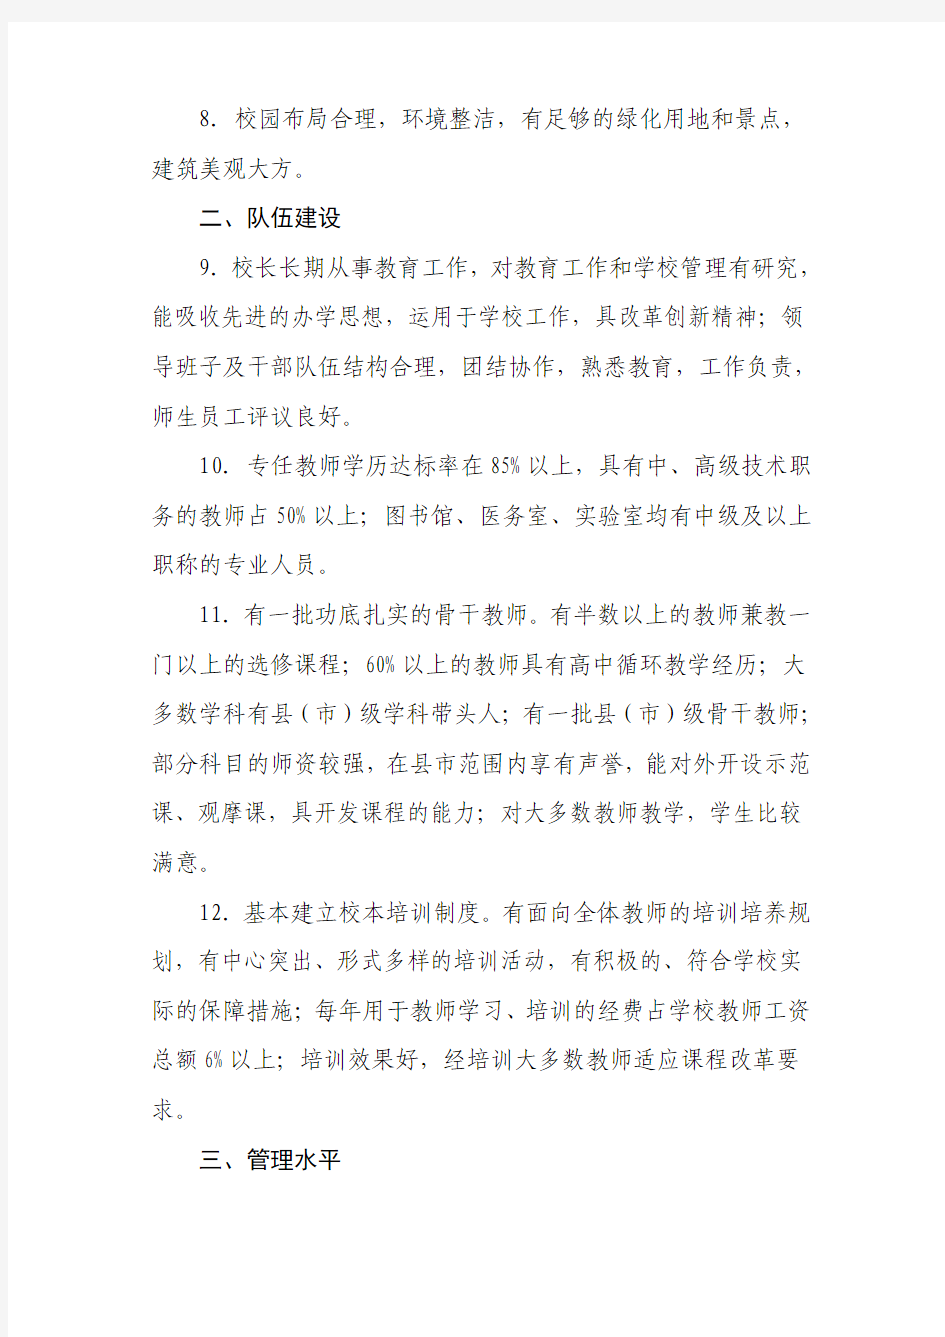 江苏省普通高中星级评估指标体系(三星级)